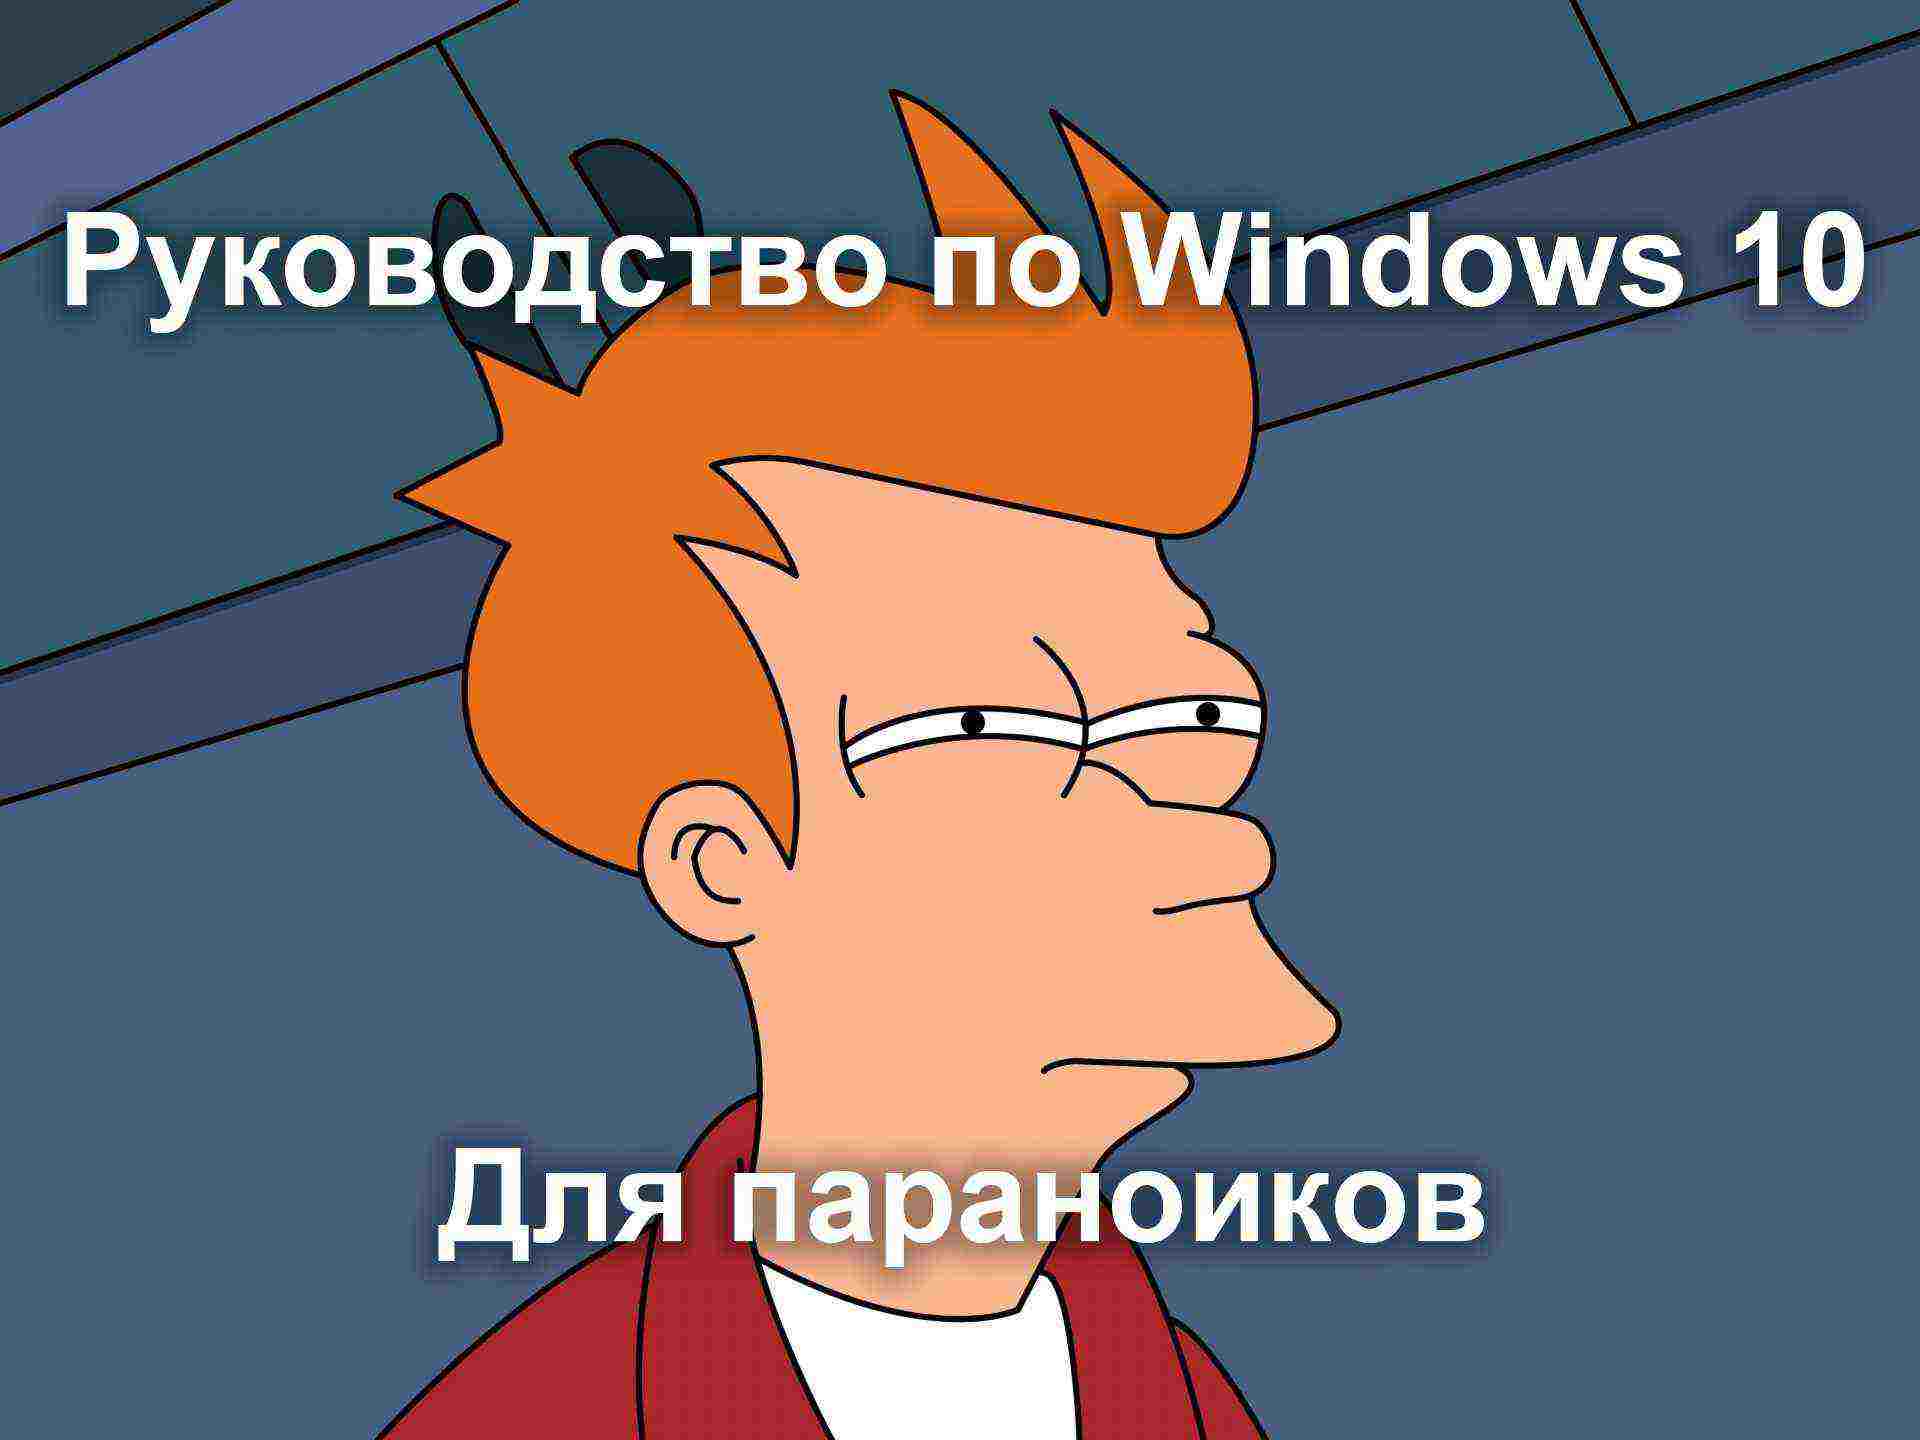 Windows 10 для параноиков: простое руководство